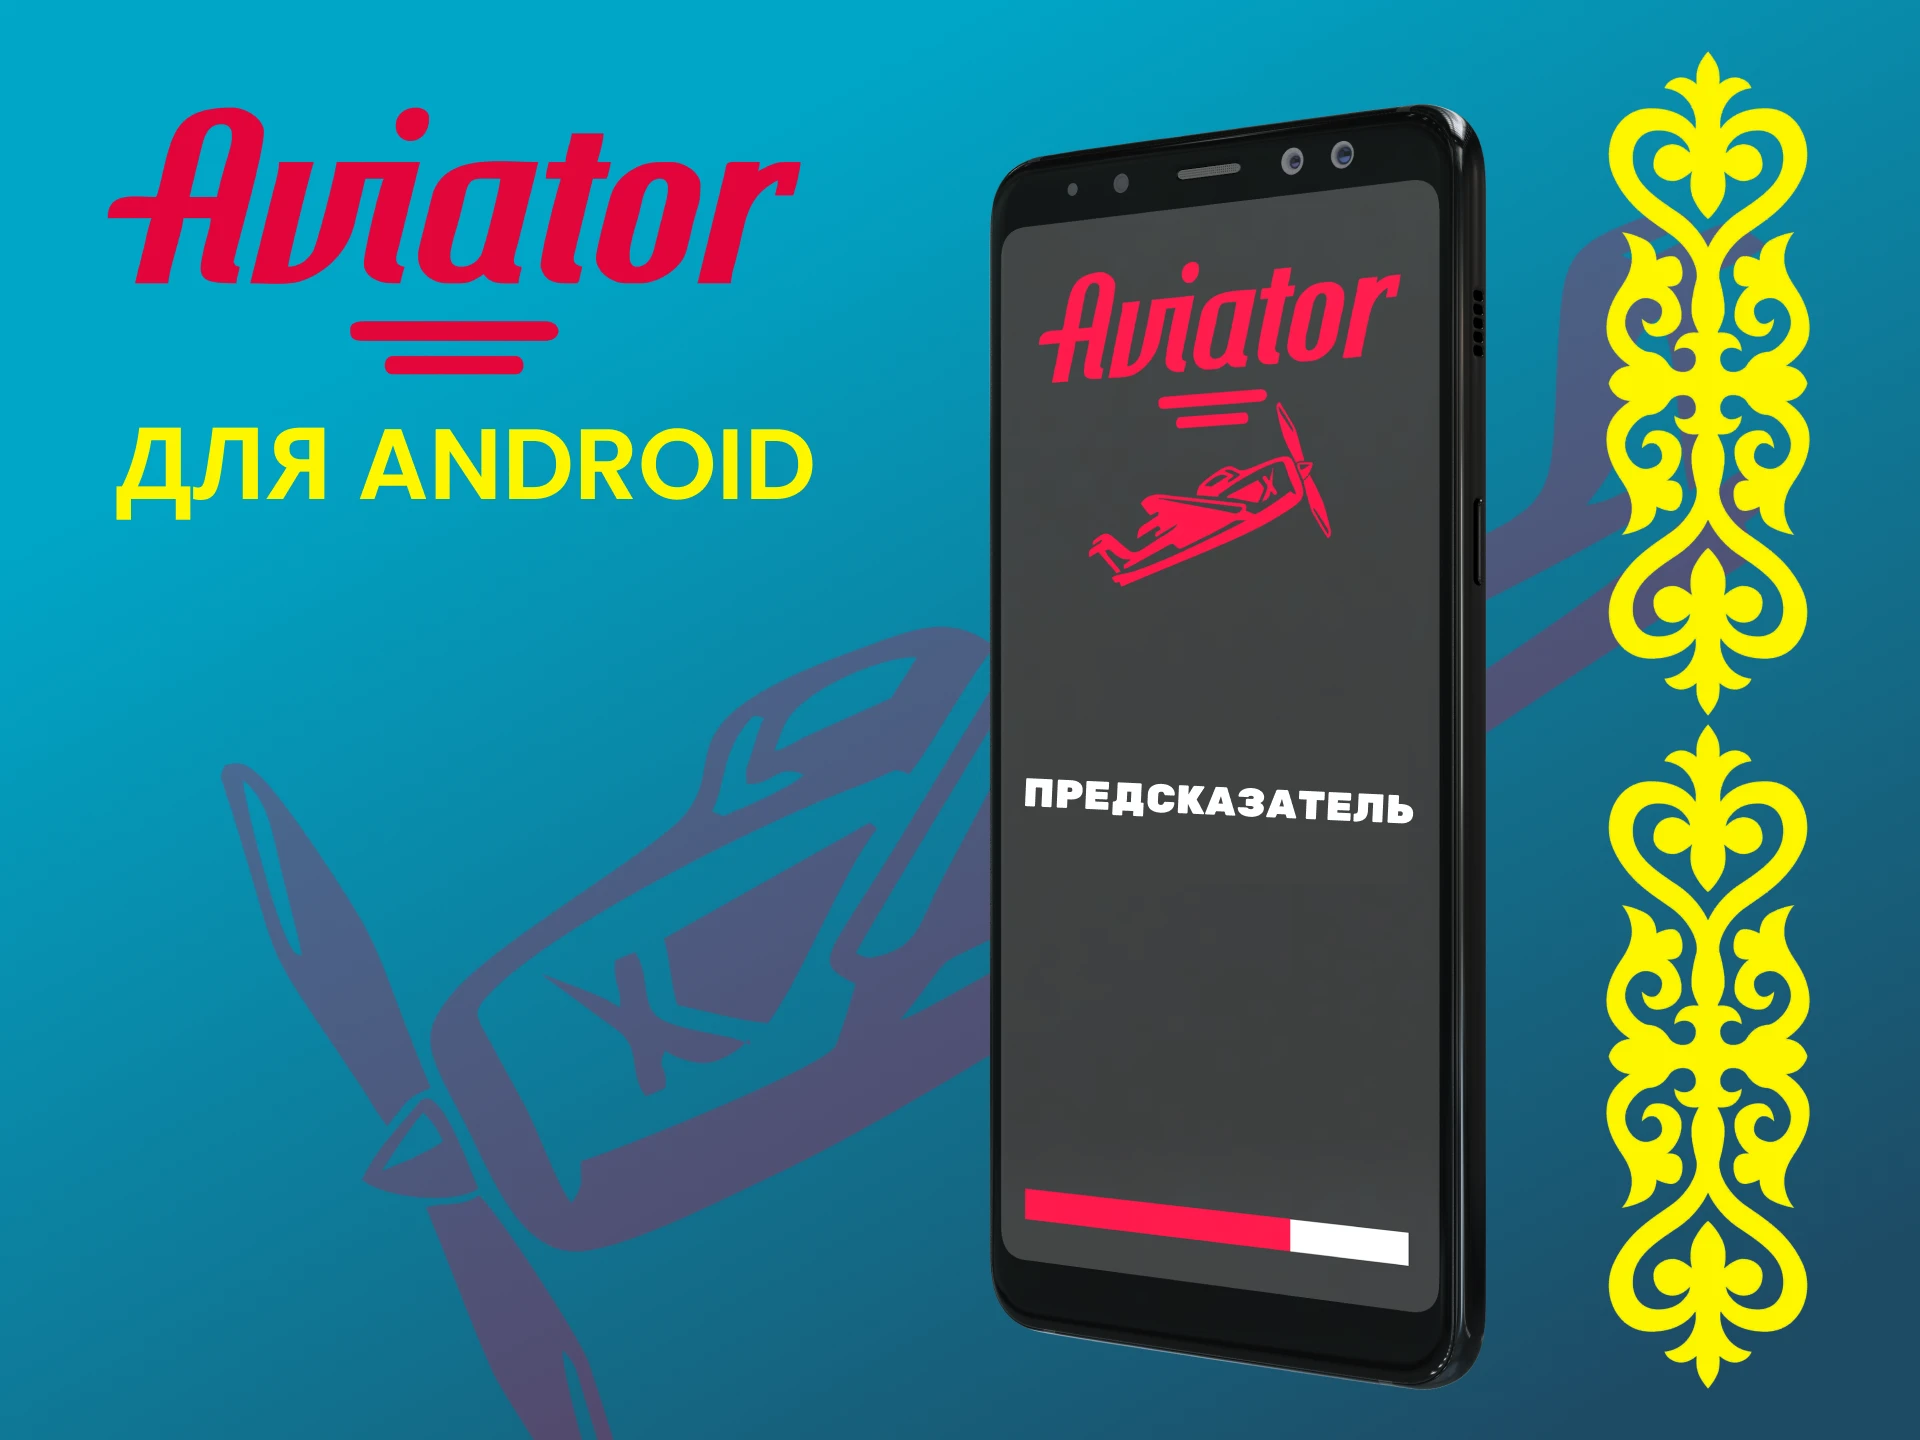 Установите предсказатель на Android для игры в Авиатор.